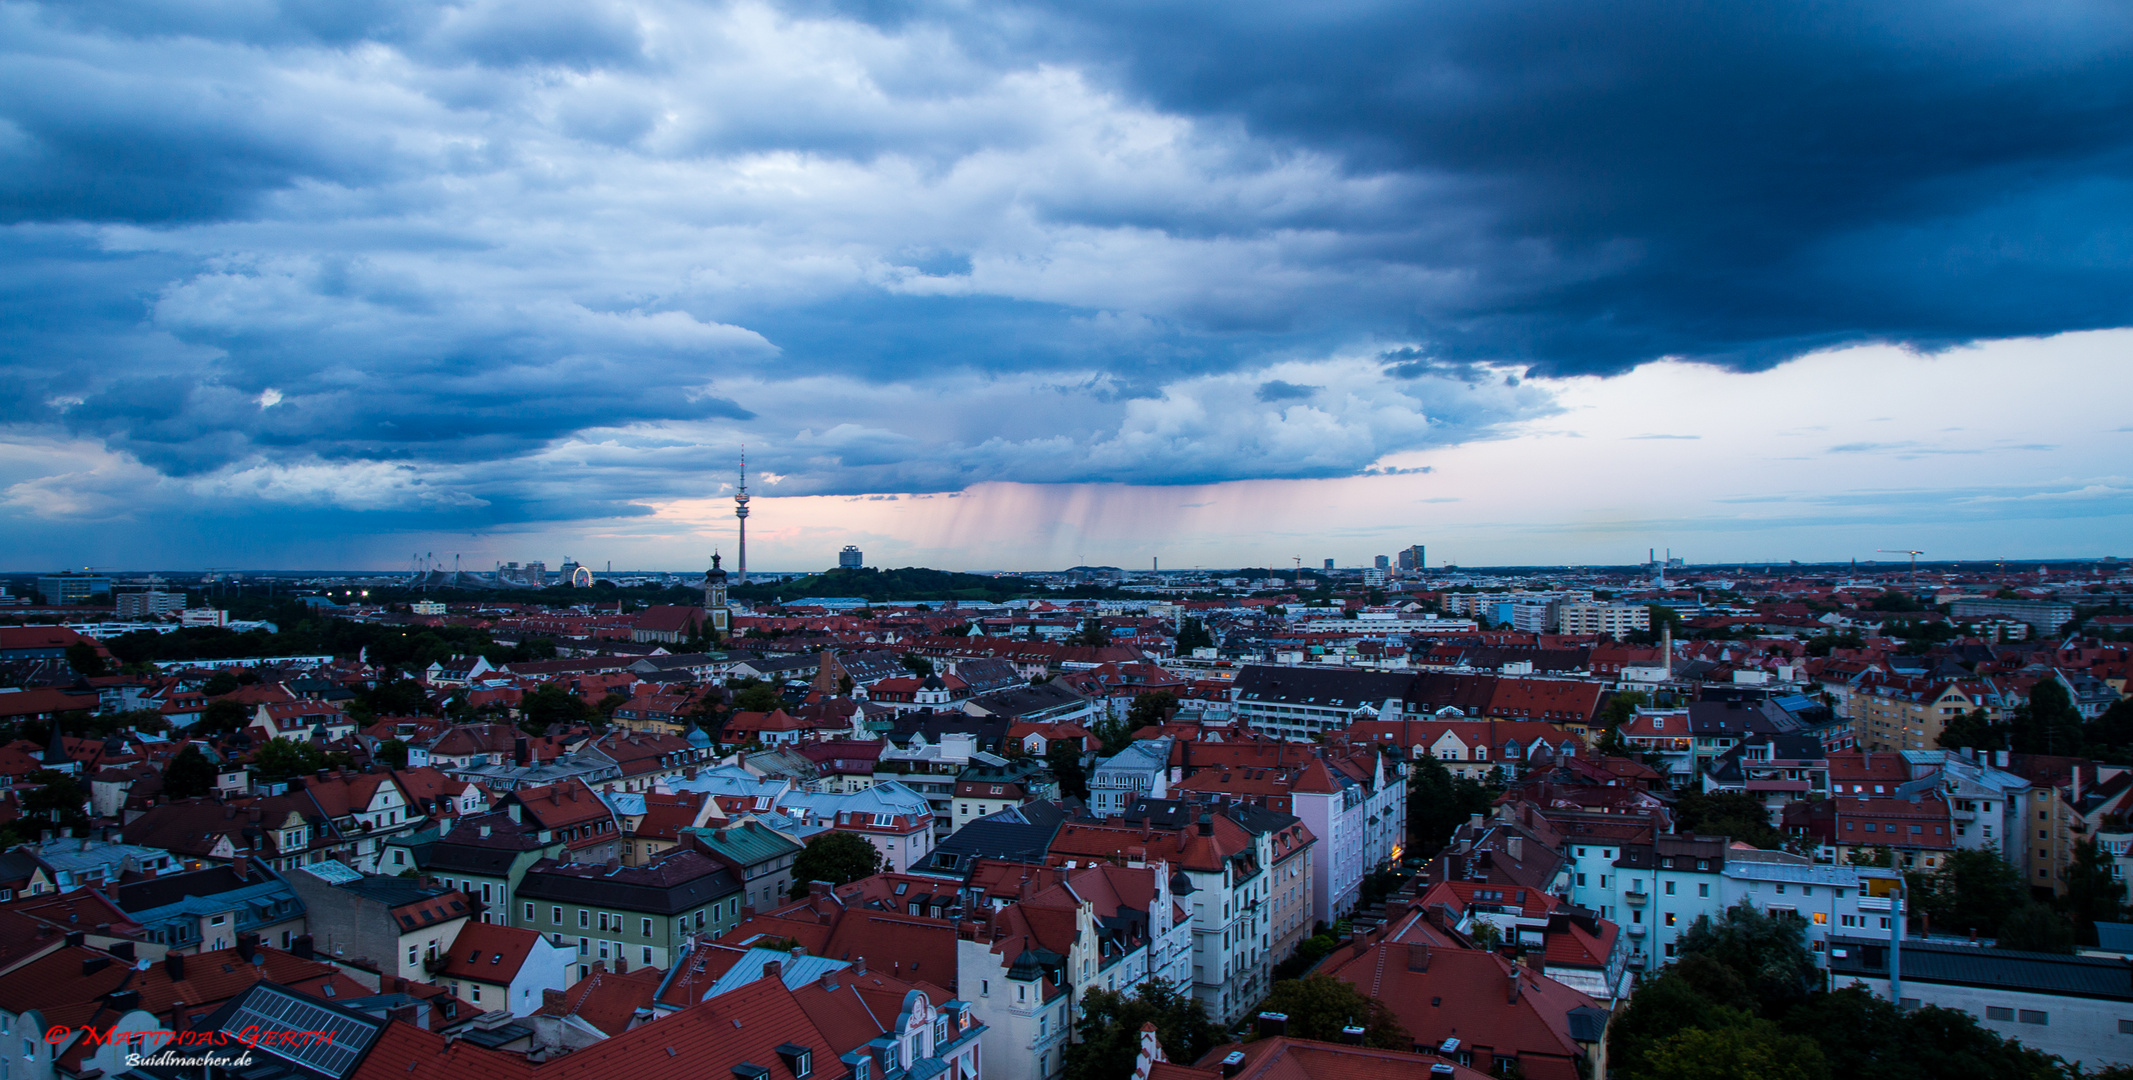 Munich Rain